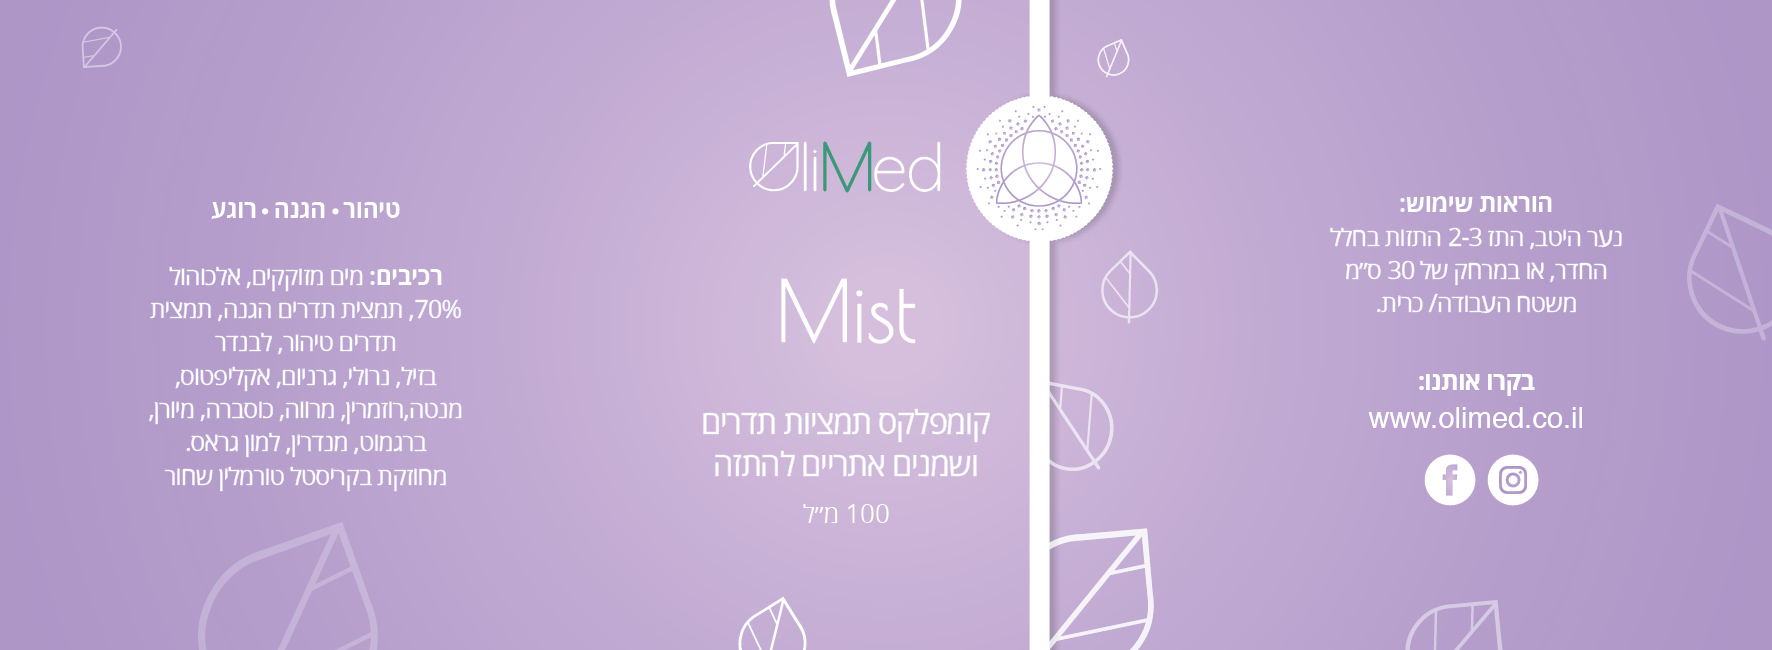 Olimed_Mist